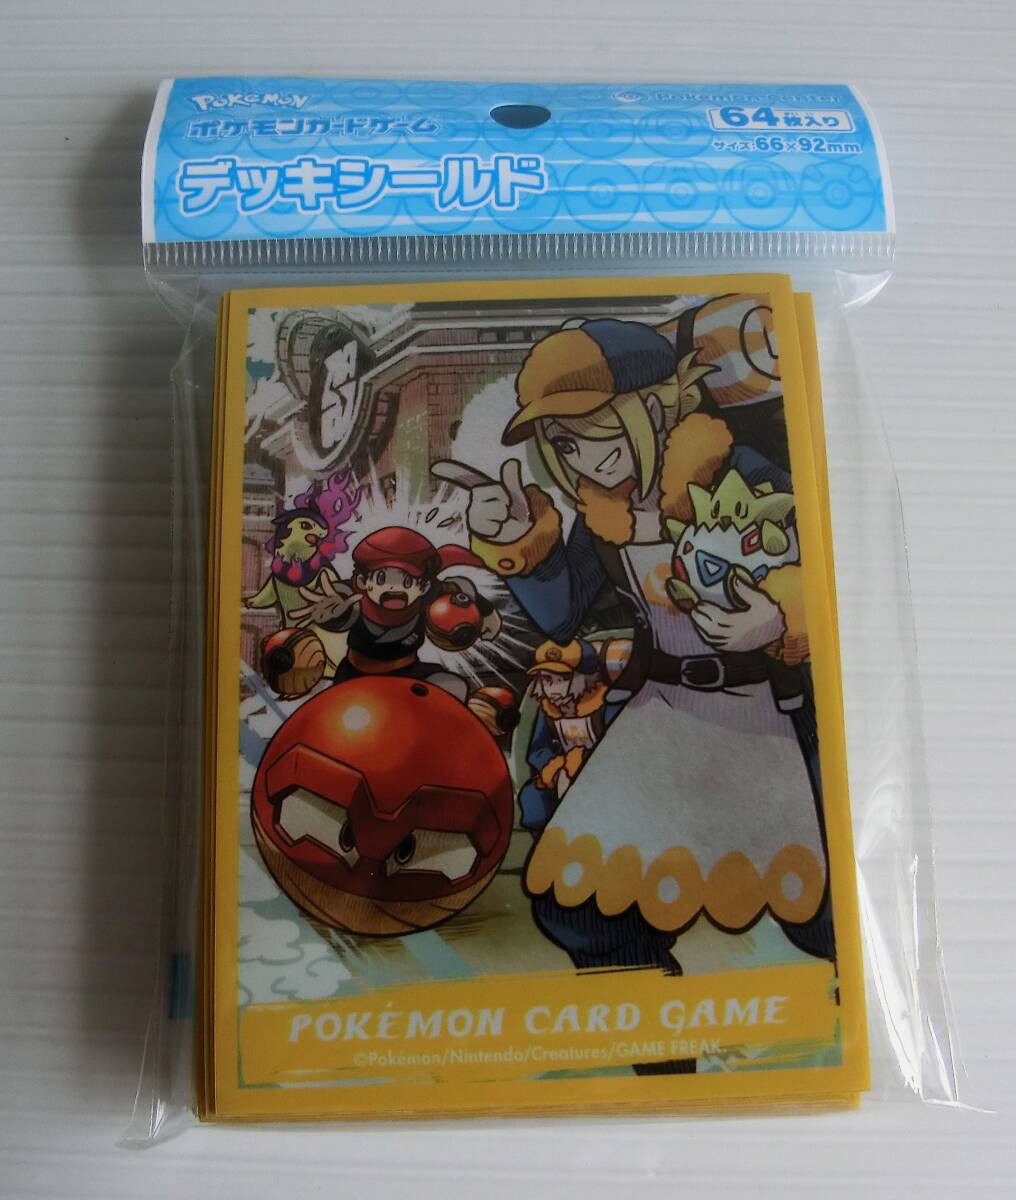  Pokemon Card Game панель защита HISUI DAYSworo*64 листов ввод * размер 66×92.* новый товар нераспечатанный *pokeka*POKEMON